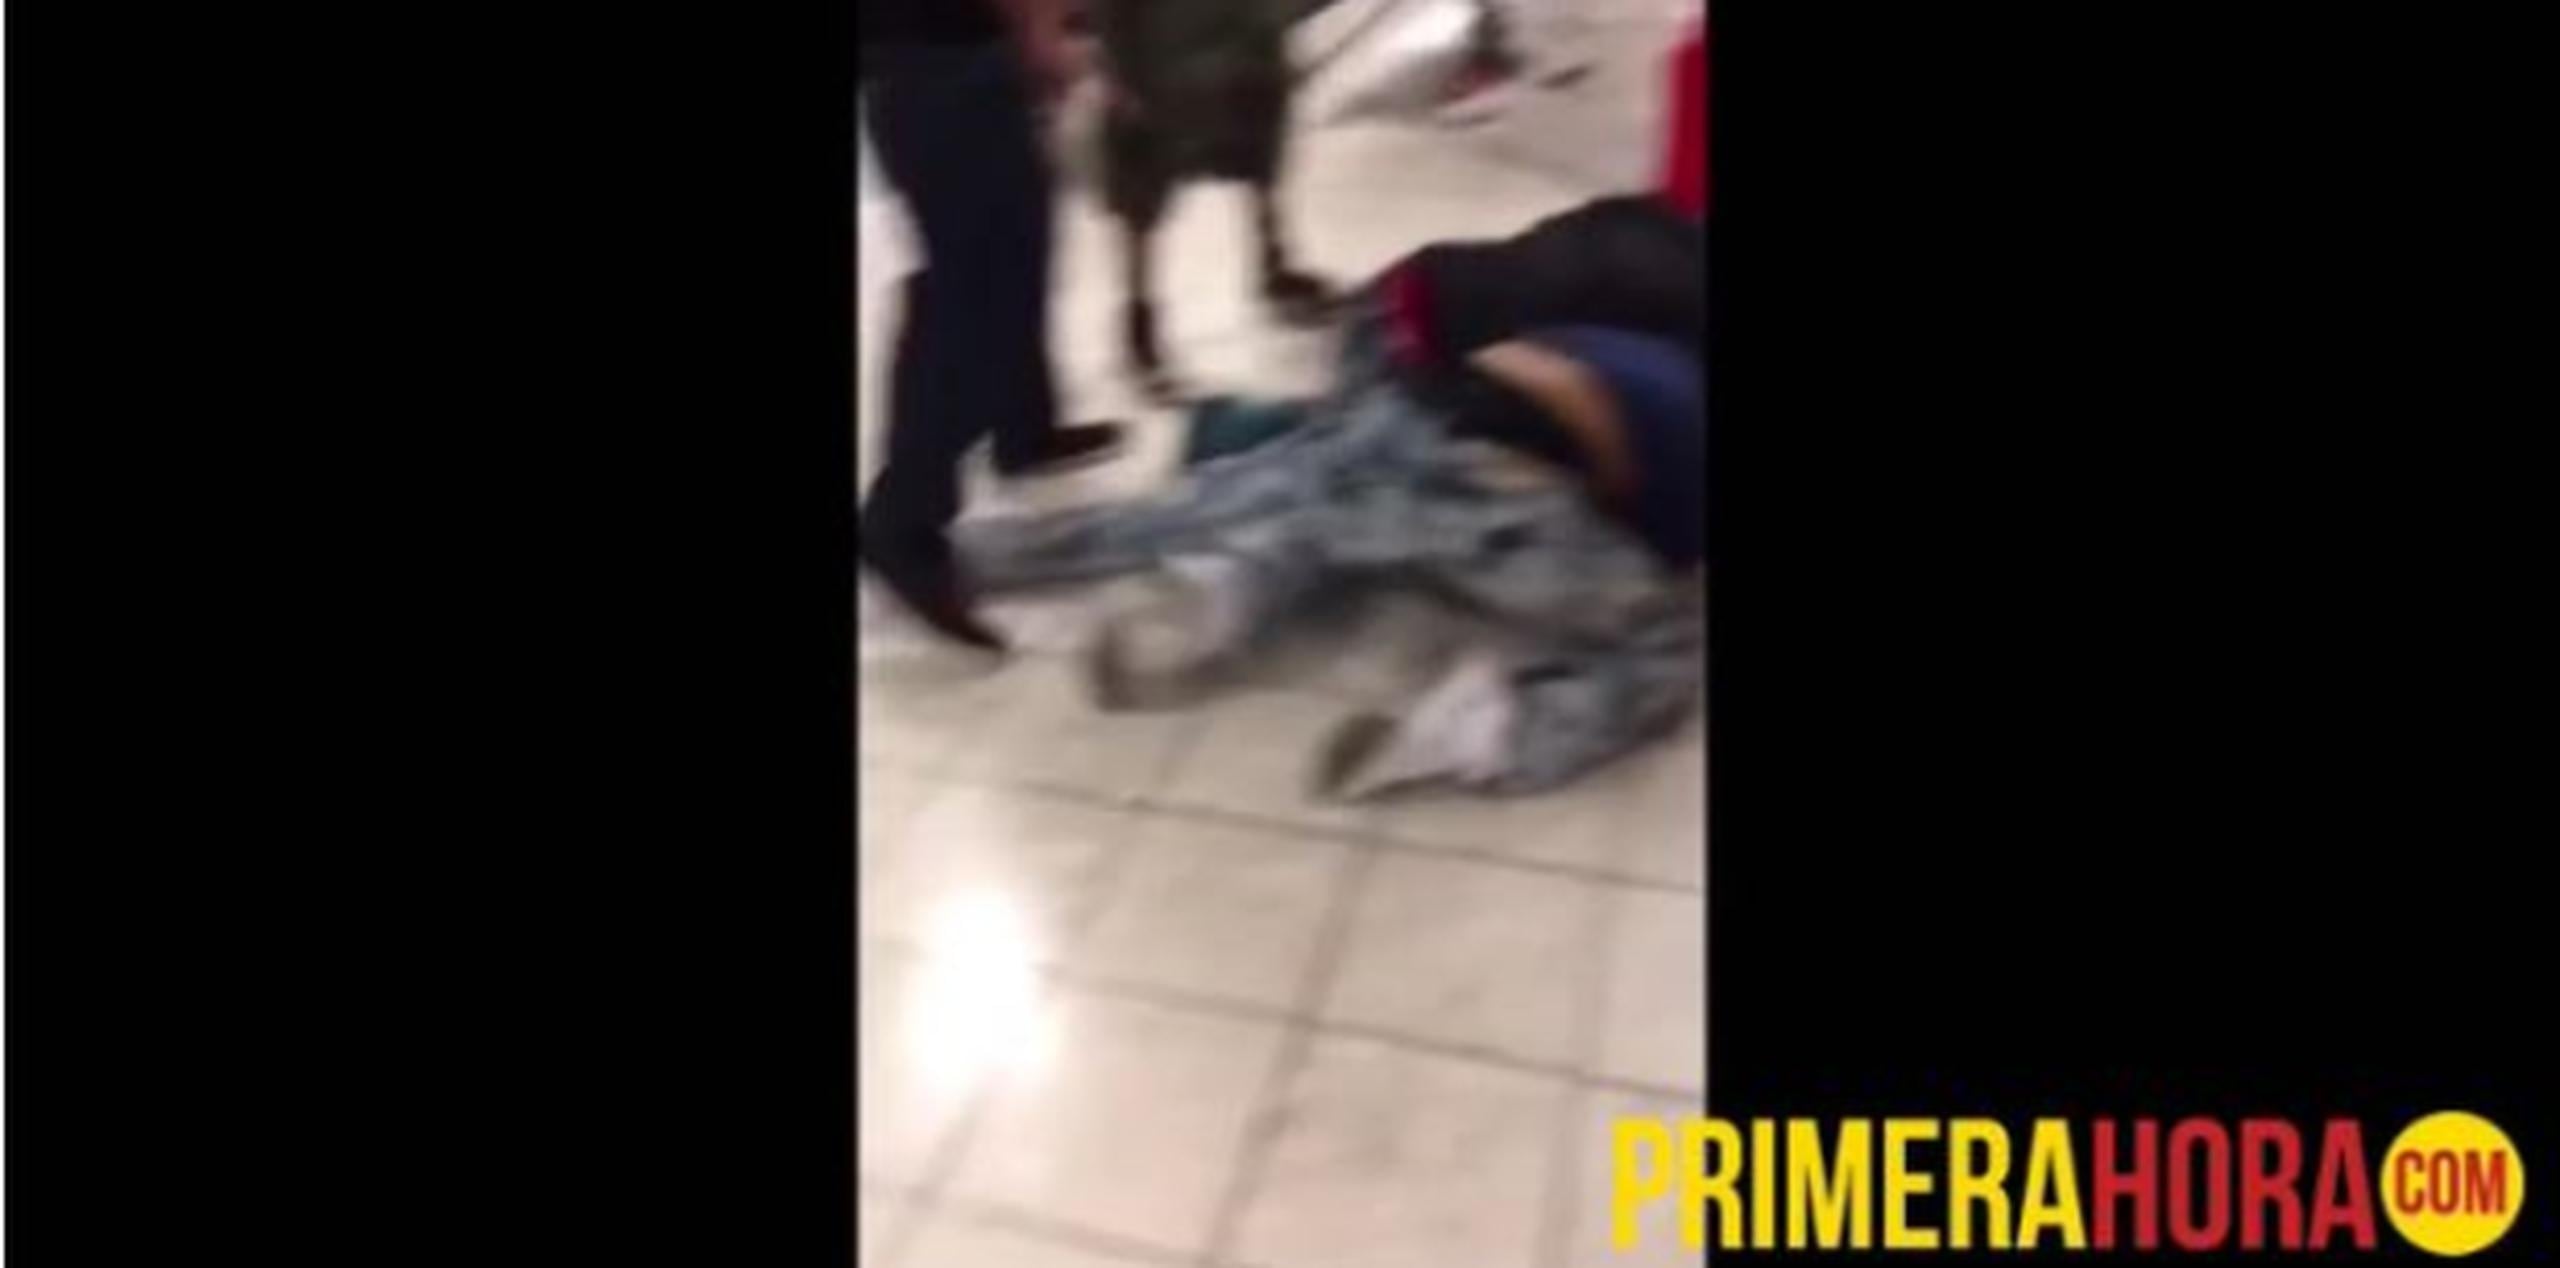 Varias personas rodaron por el piso en medio de la pelea. (Captura)